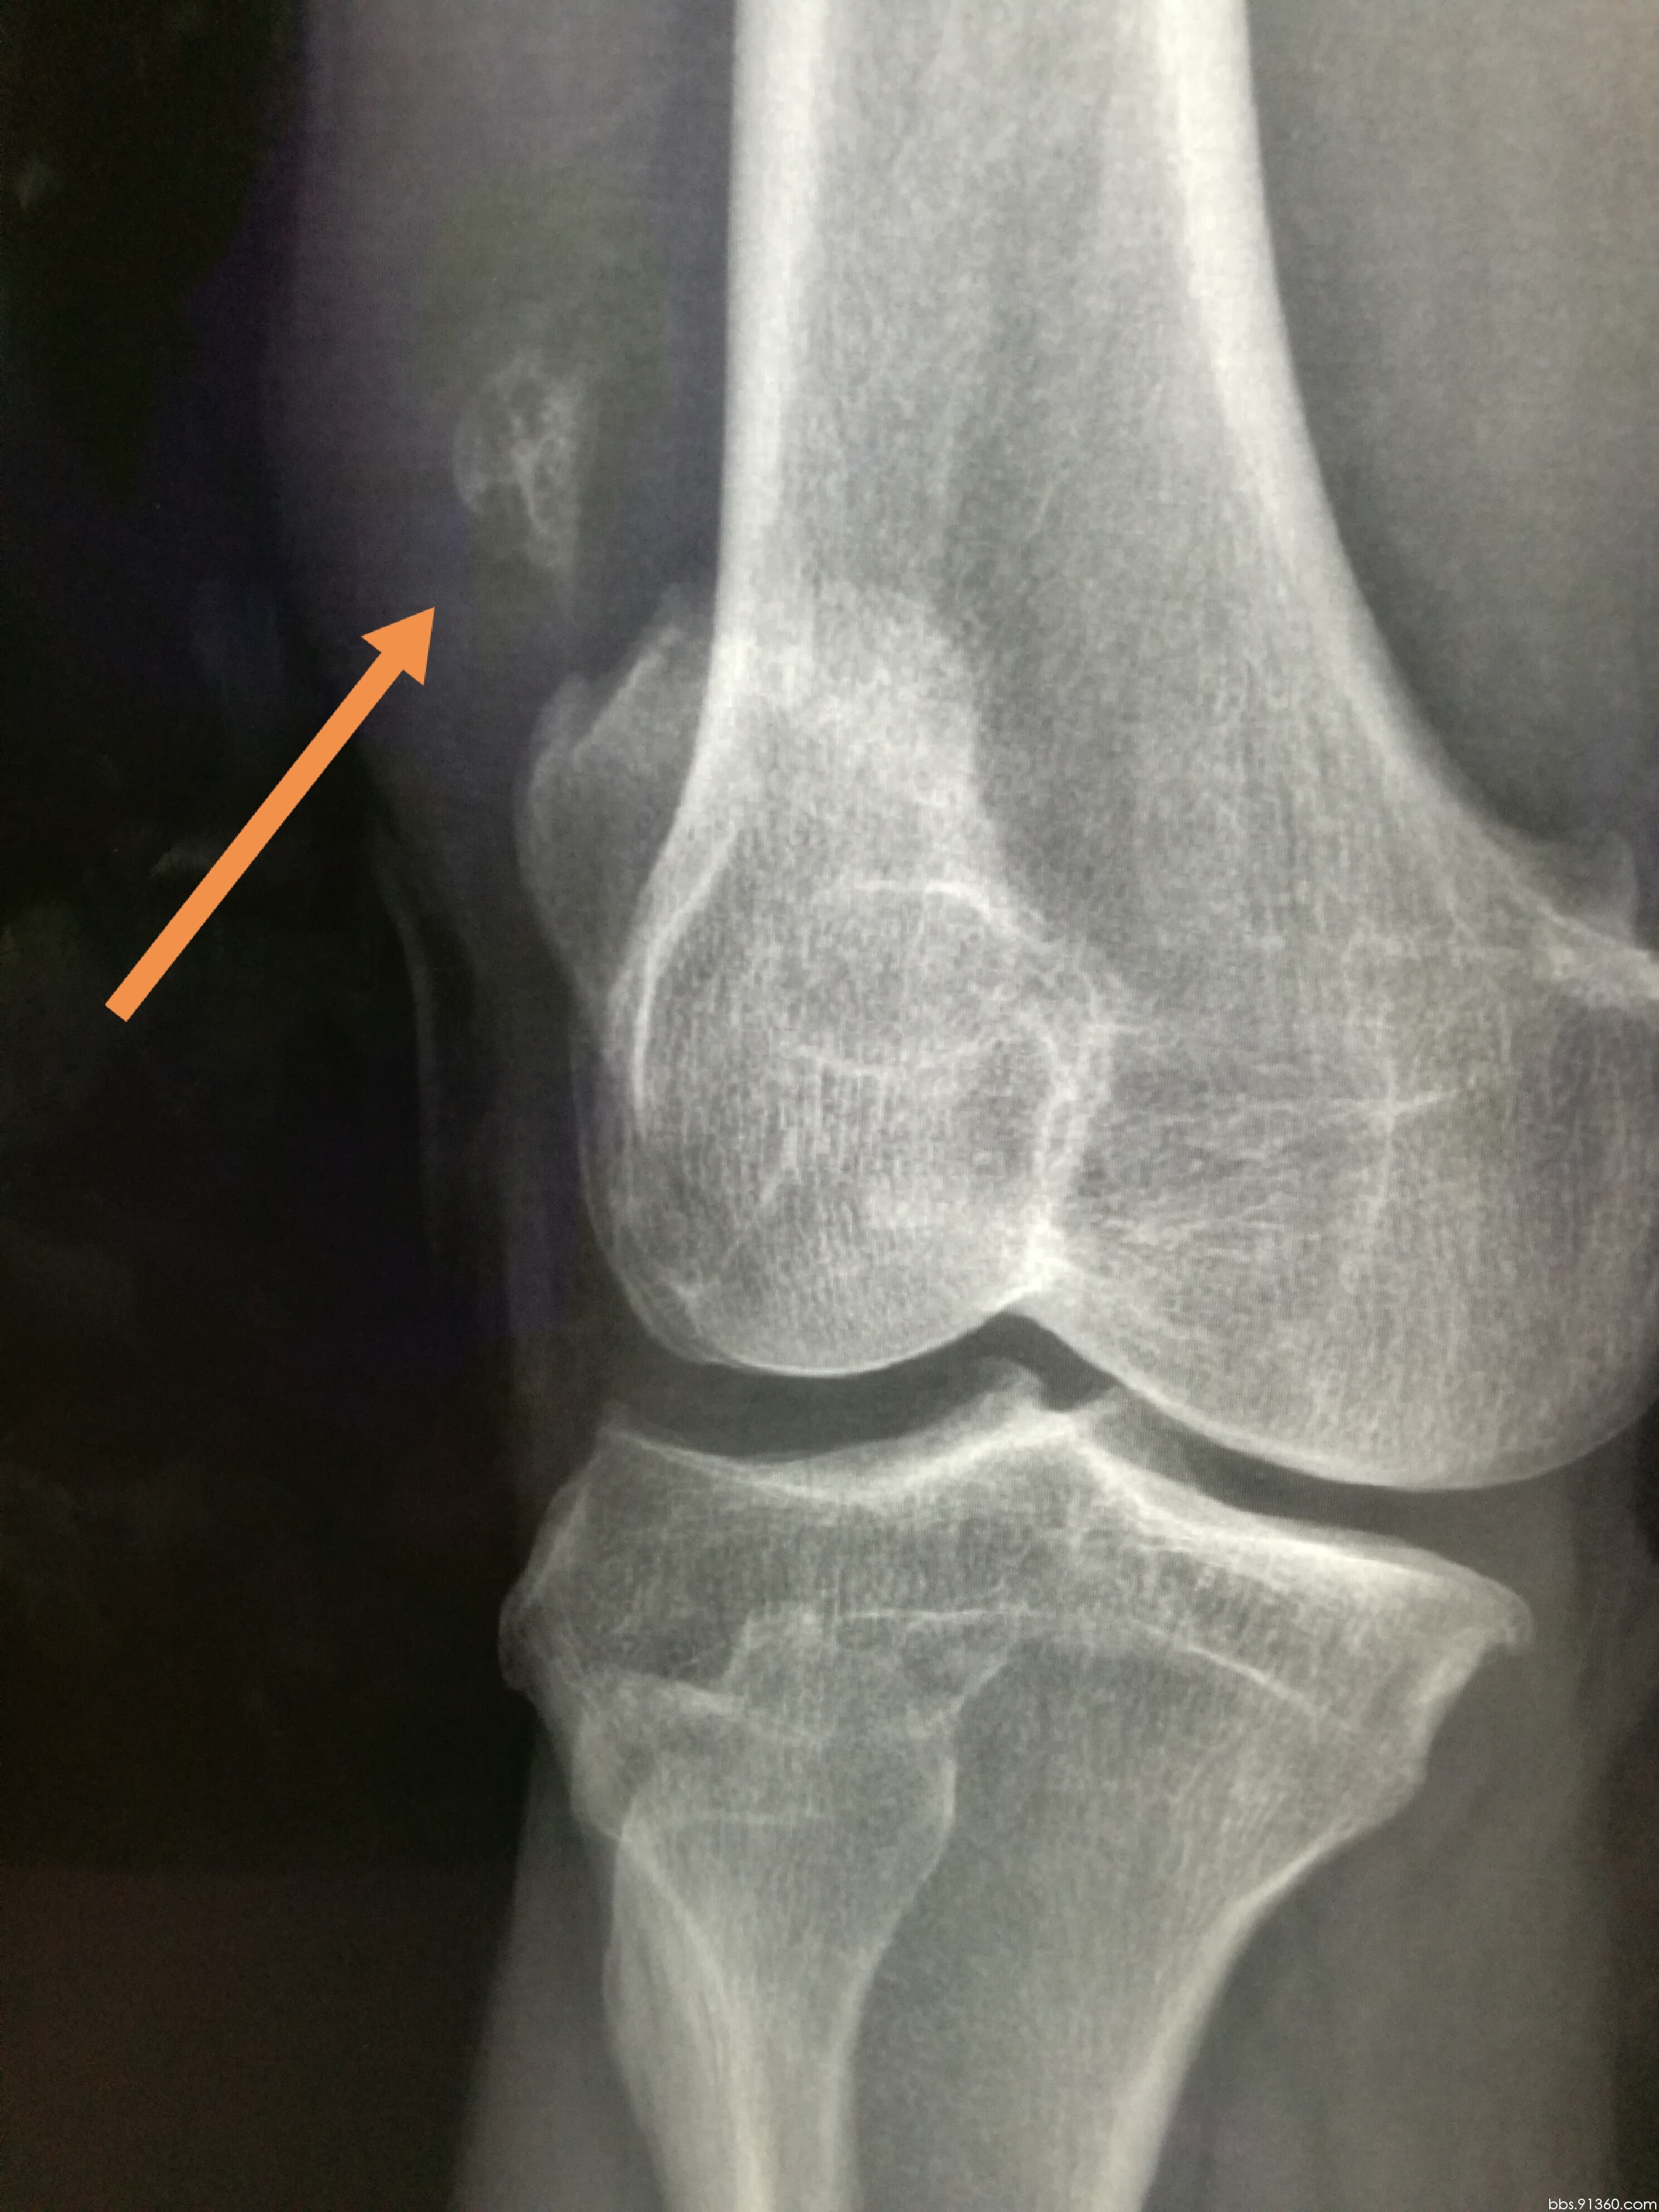 膝关节CT解剖-外科学-医学